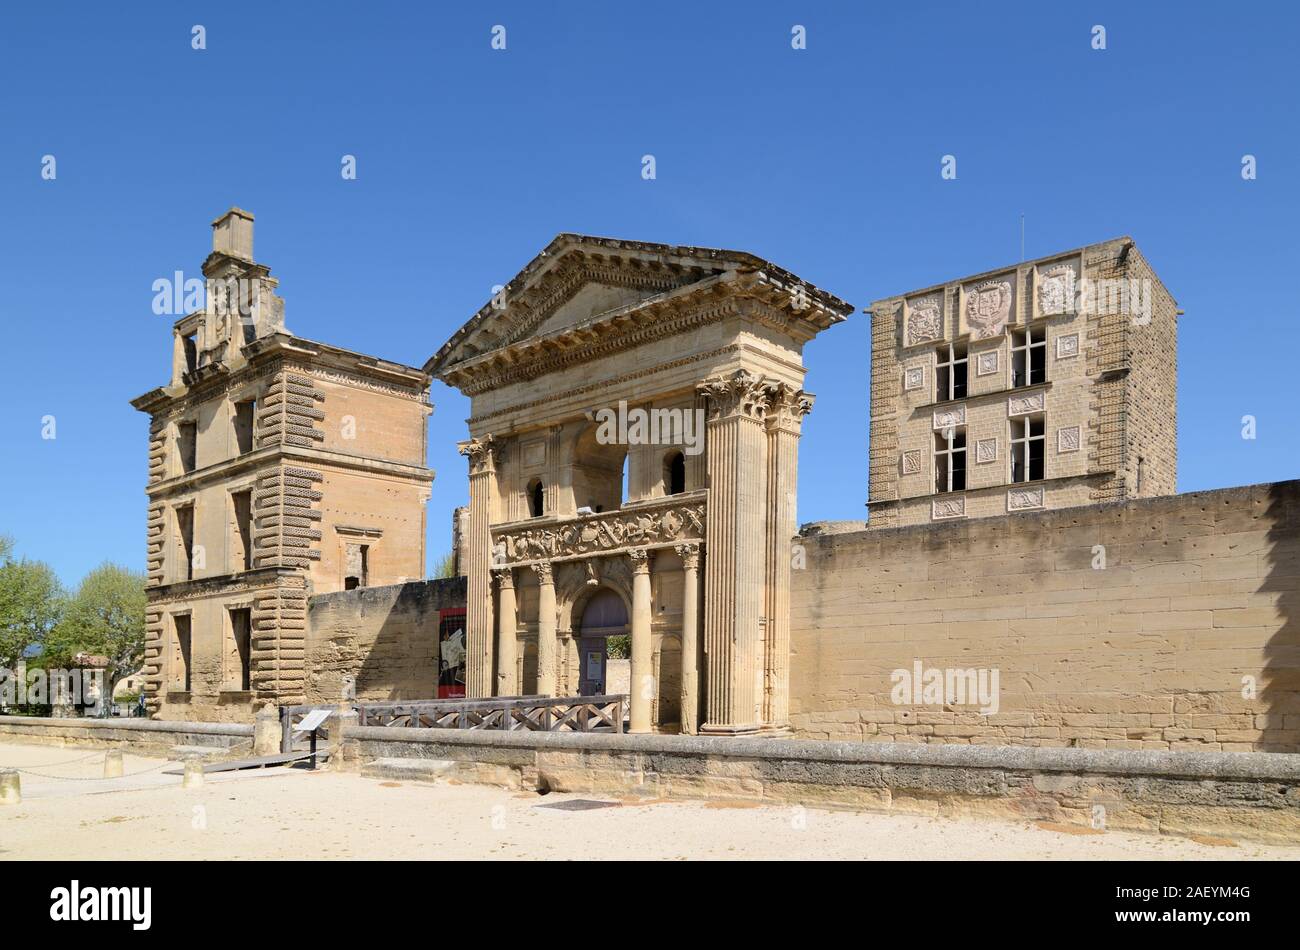 Château Renaissance en ruines de La Tour-d'Aigues Vaucluse Luberon Provence France Banque D'Images